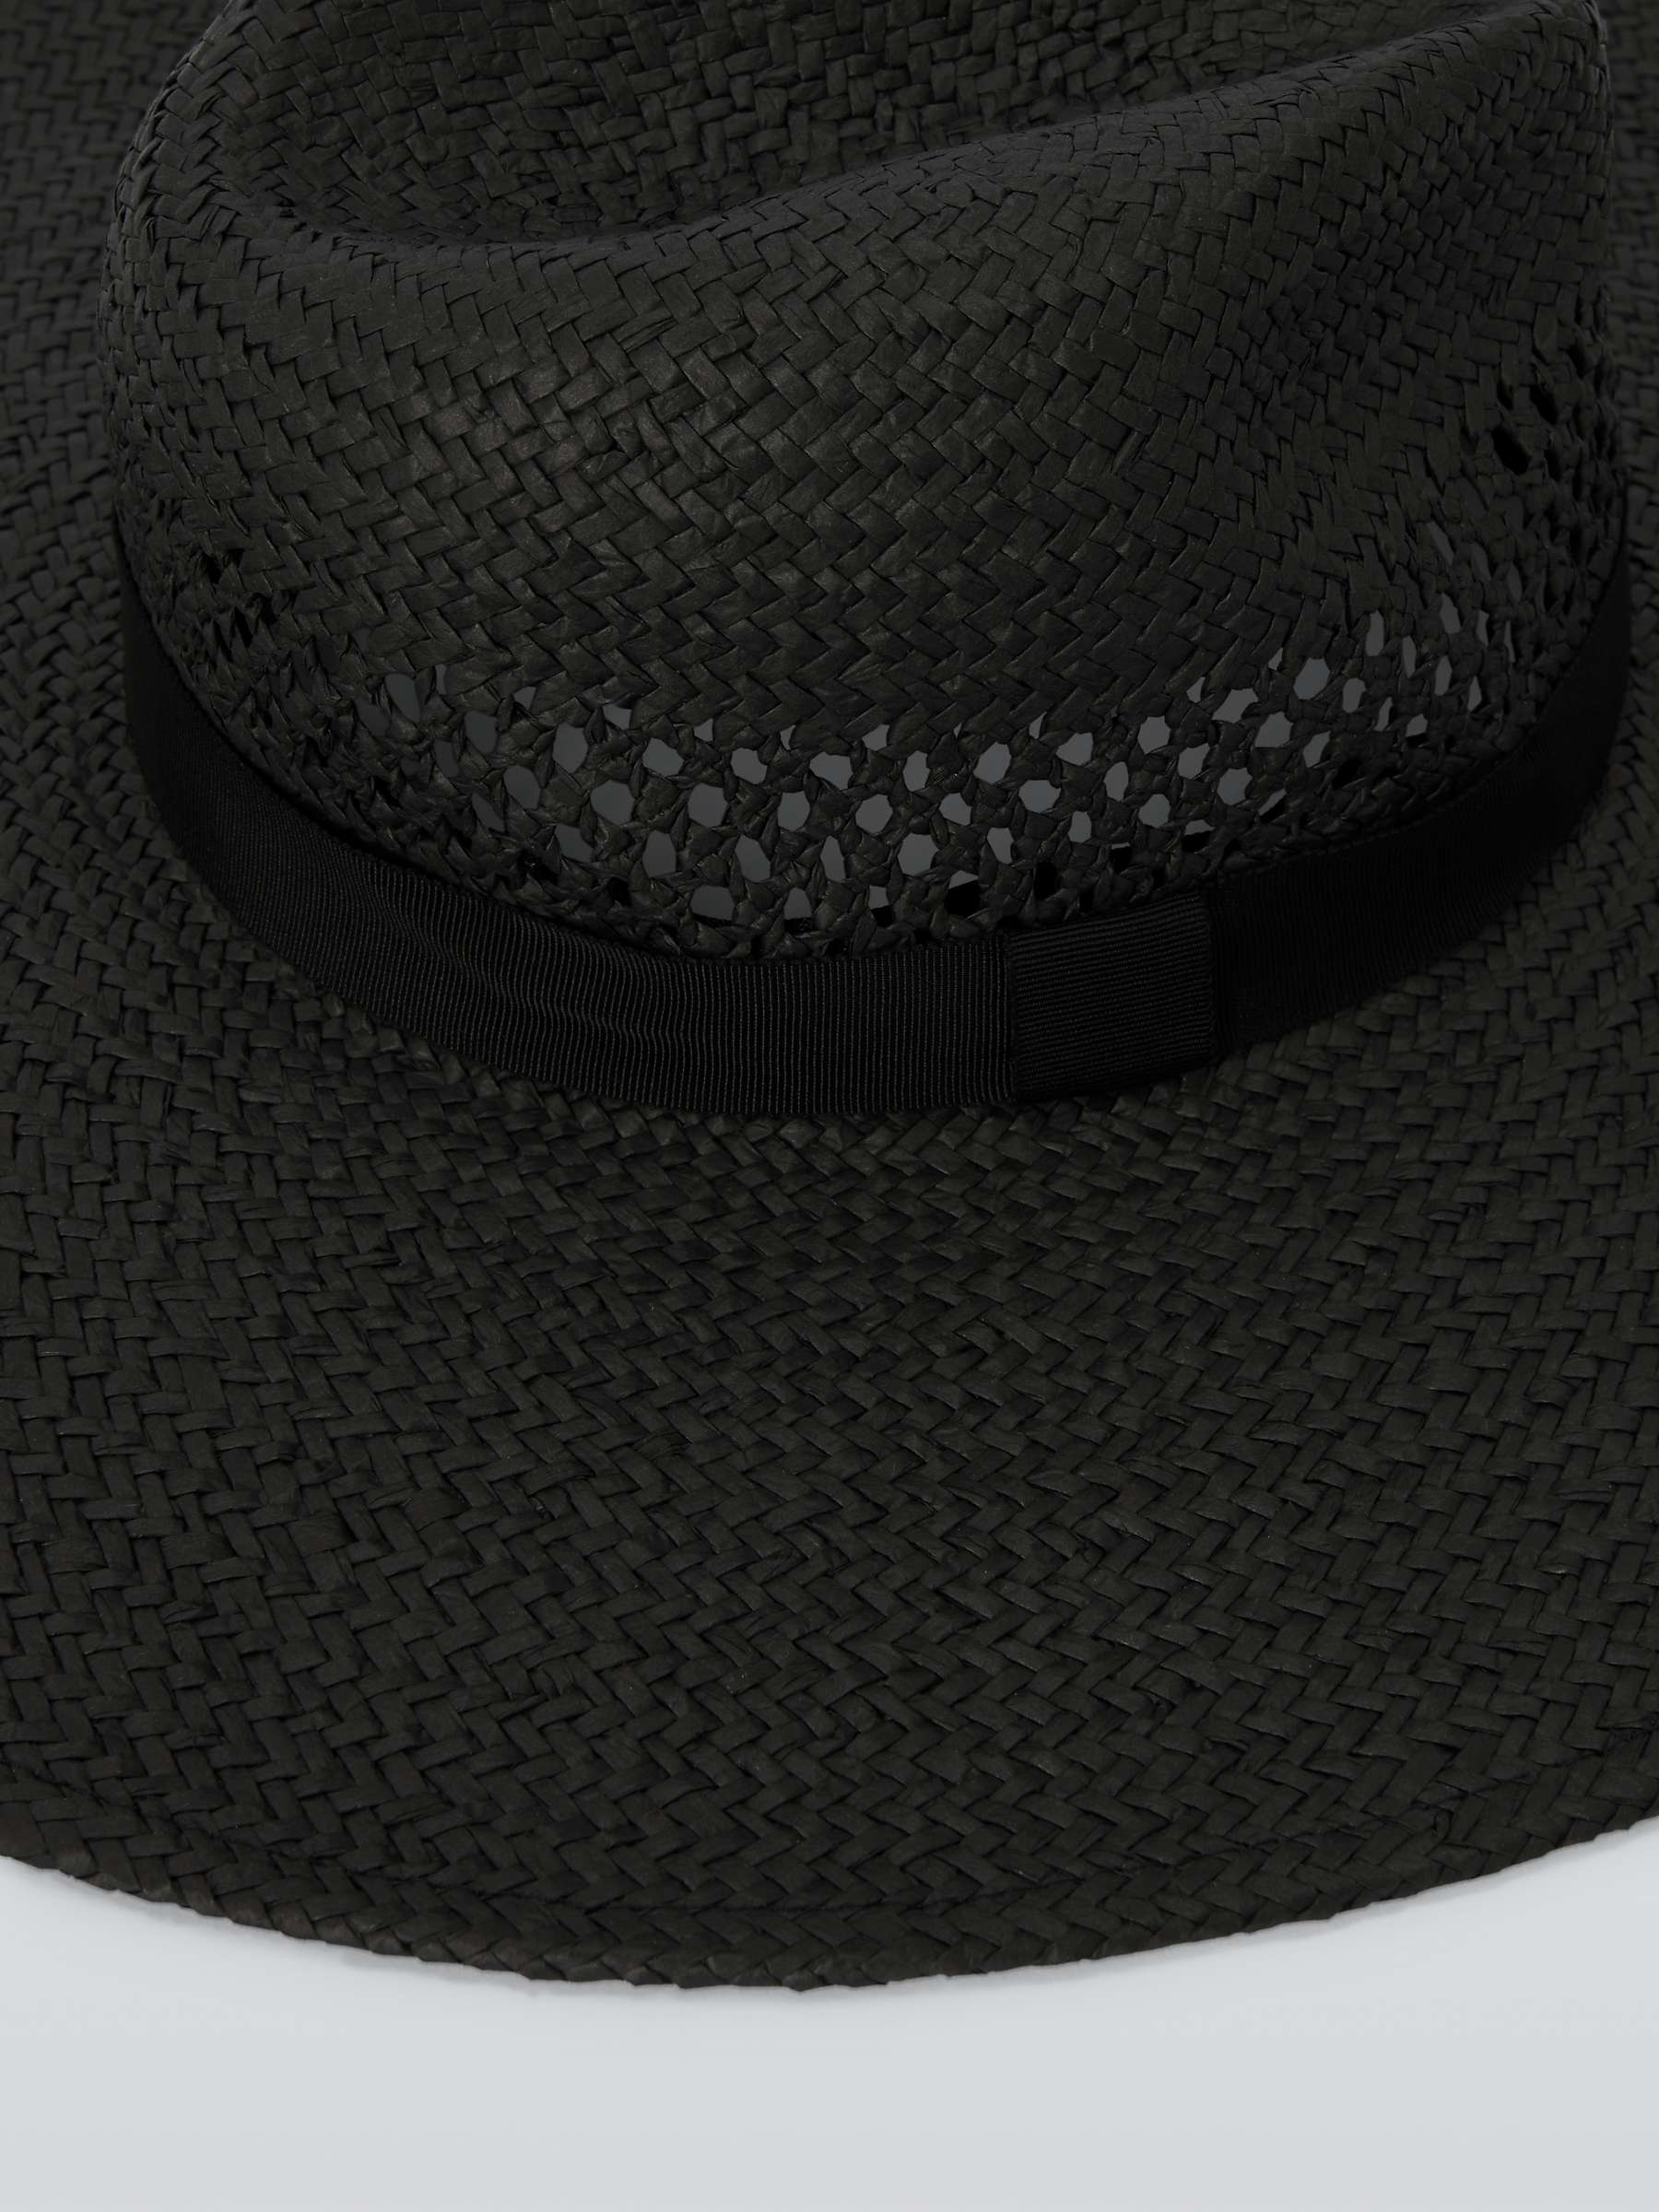 Buy John Lewis Wide Brim Fedora Hat, FSC-Certified, Black Online at johnlewis.com